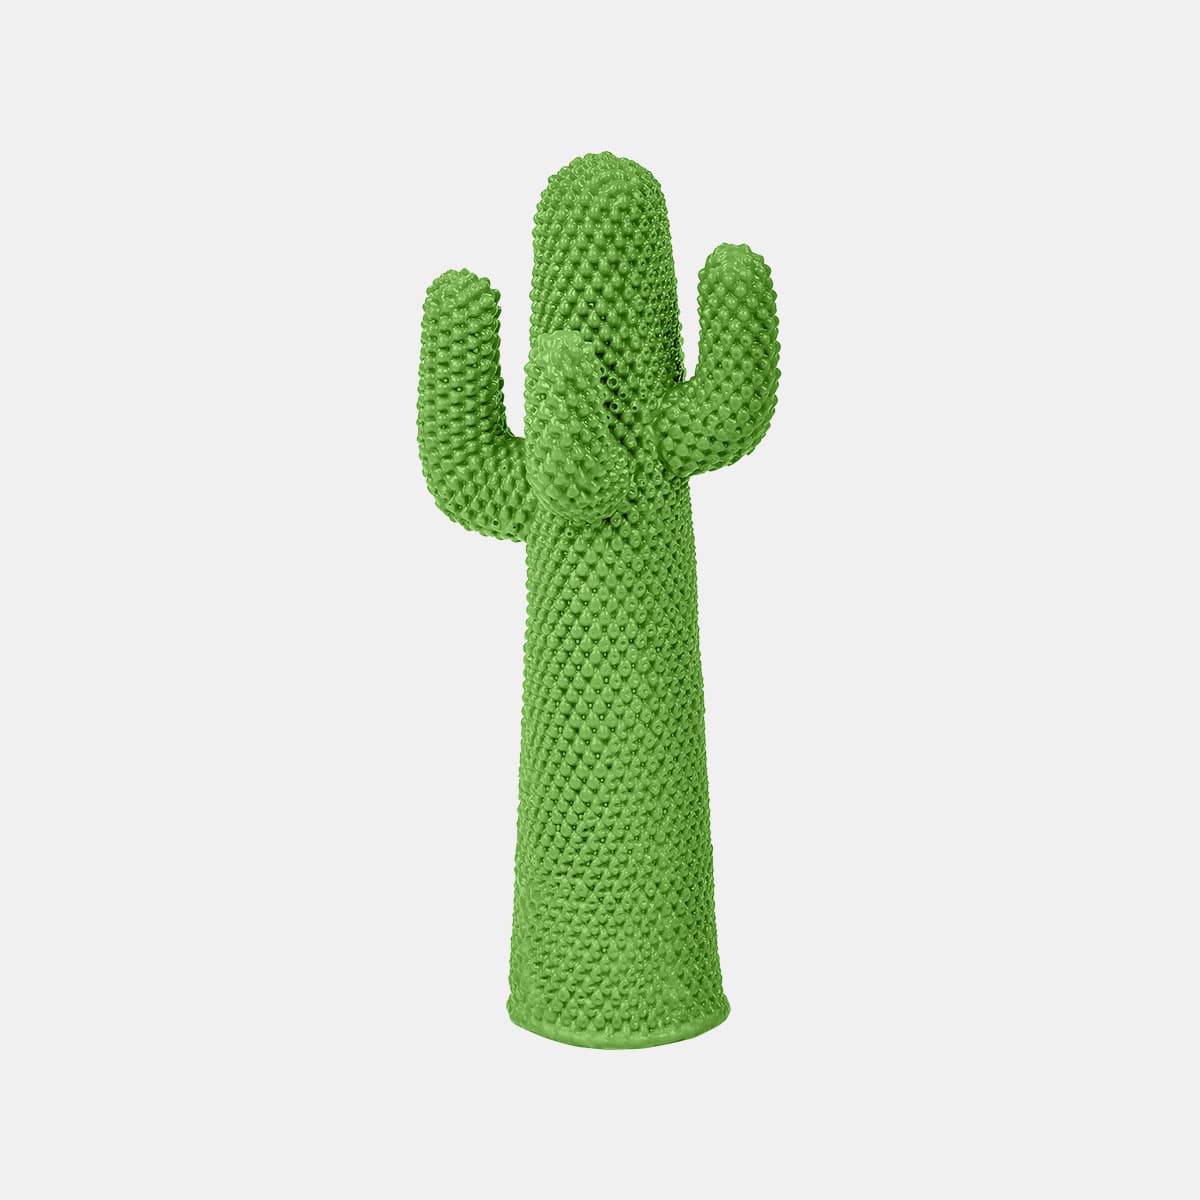 gufram-guido-drocco-franco-mello-guframini-little-cactus-another-green-001shop